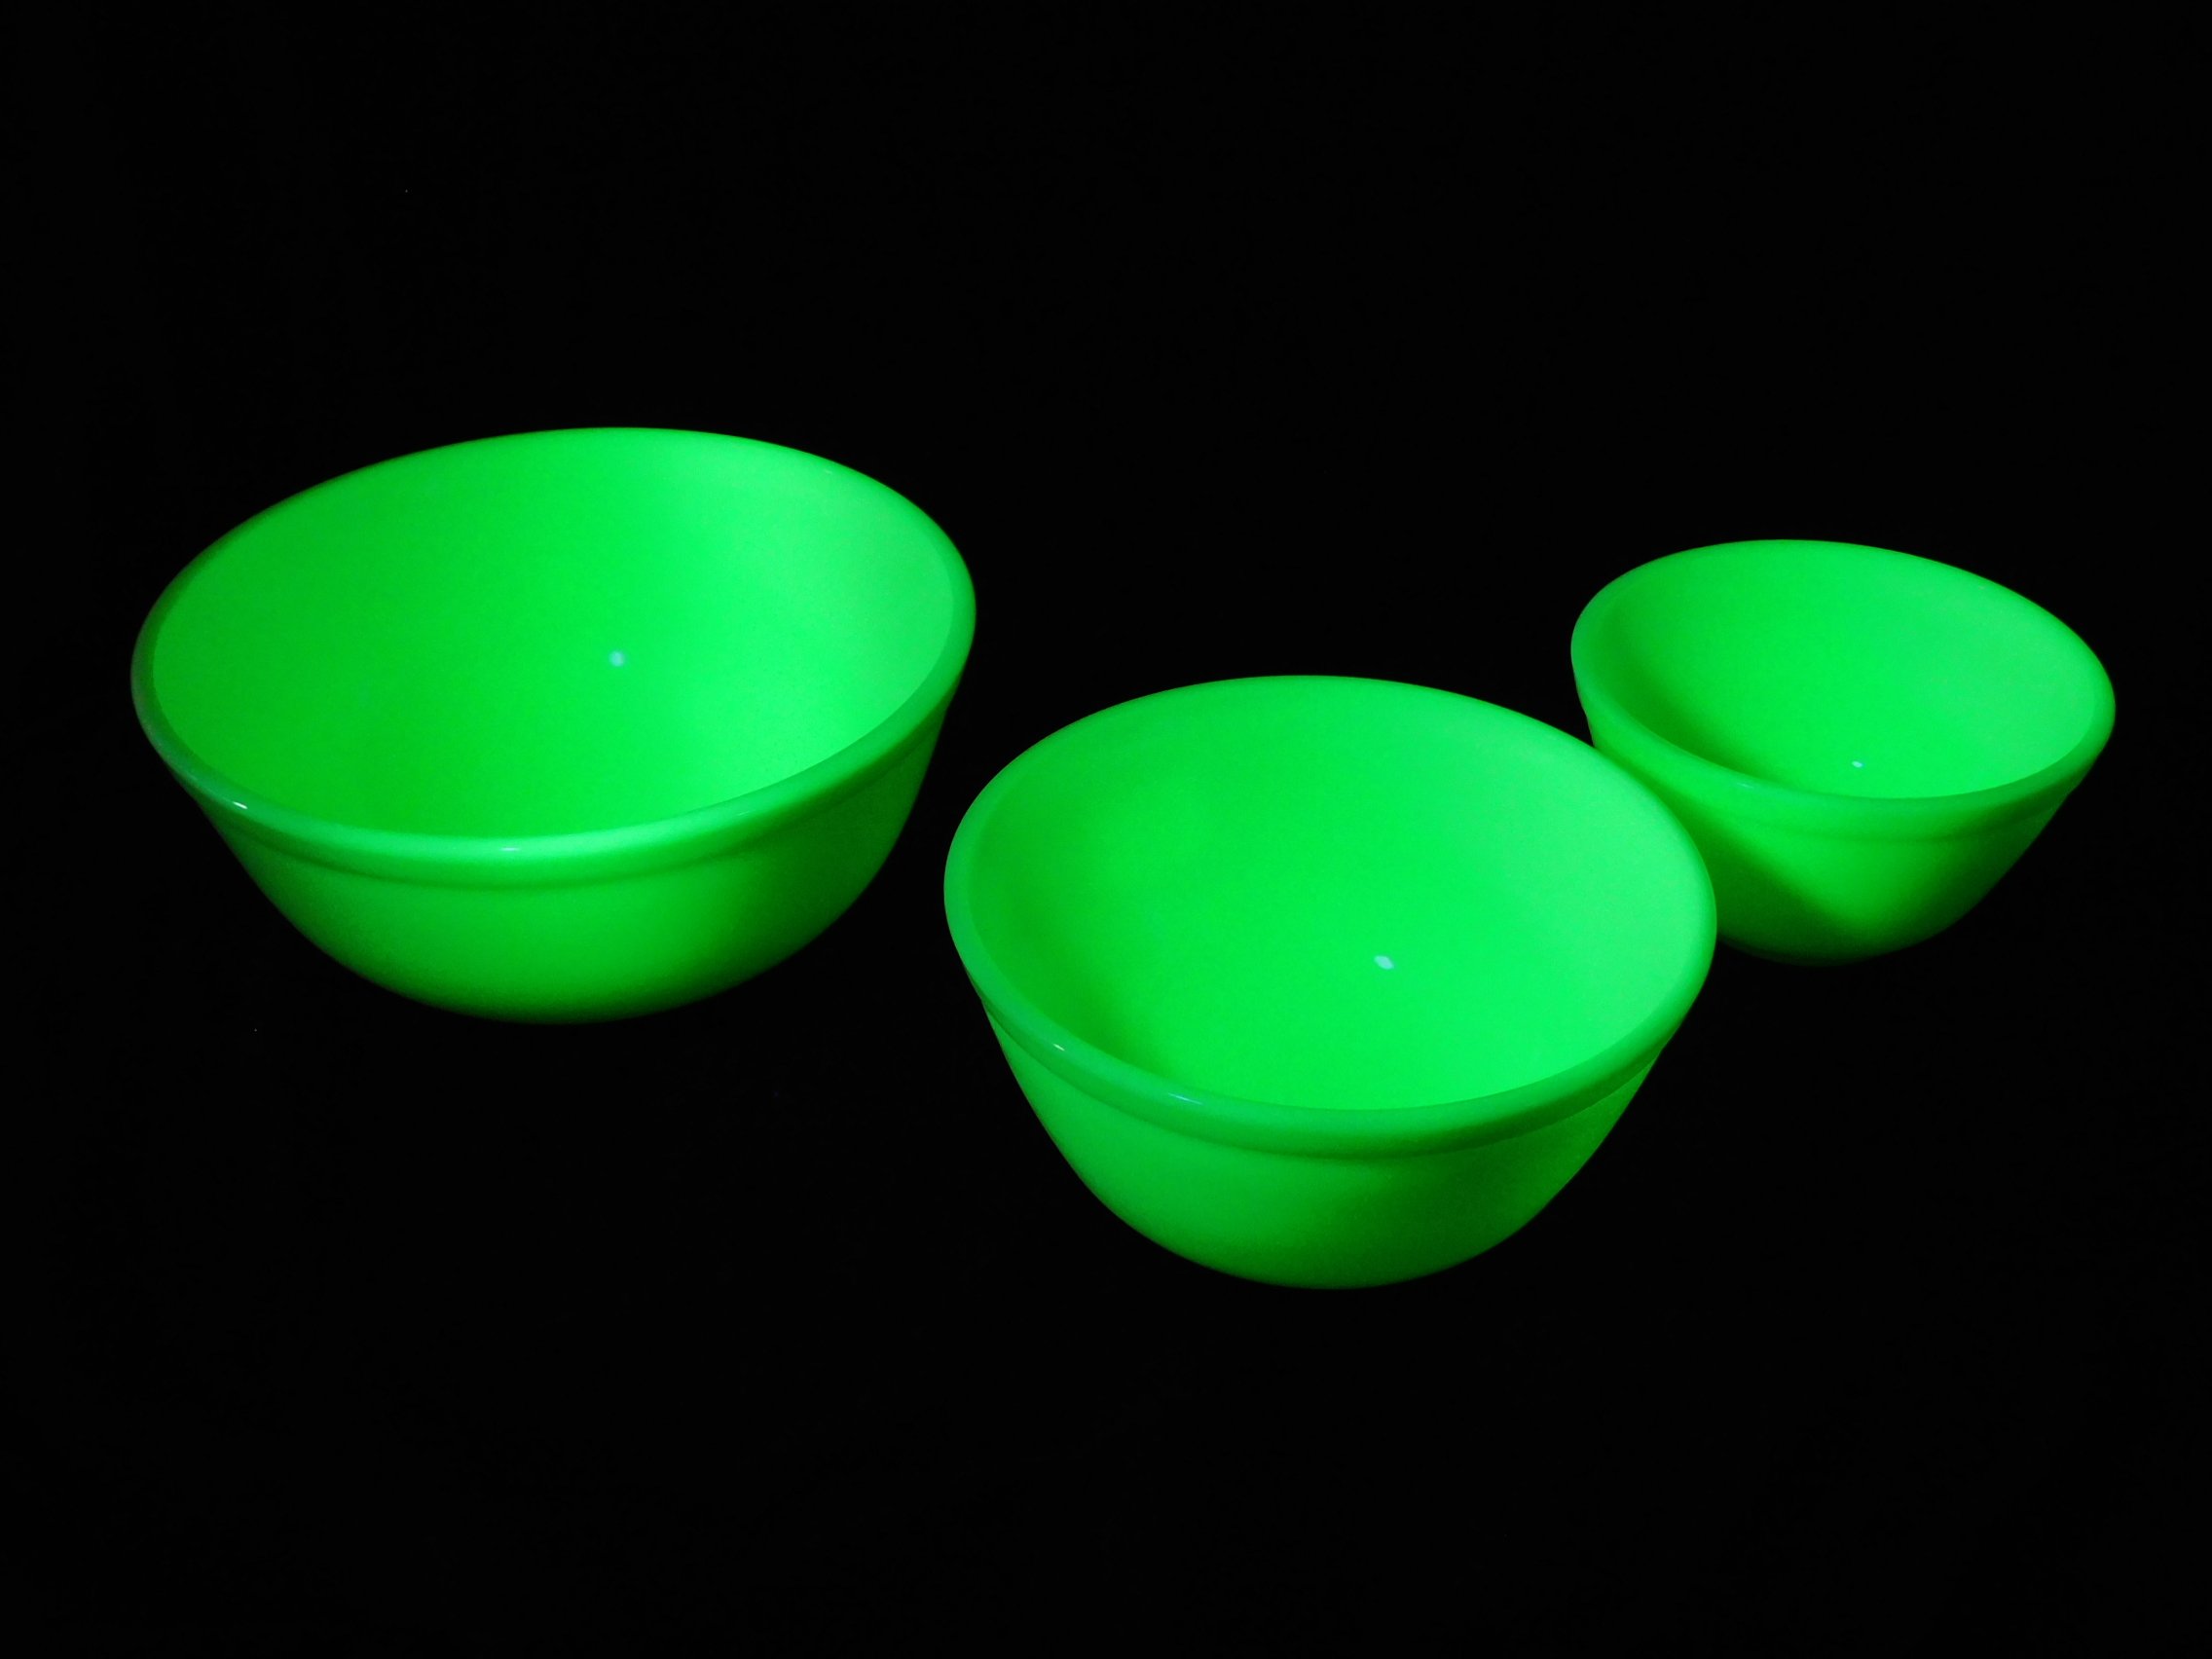 Mosser Buttercream Uranium Glass Bowls Under UV Light